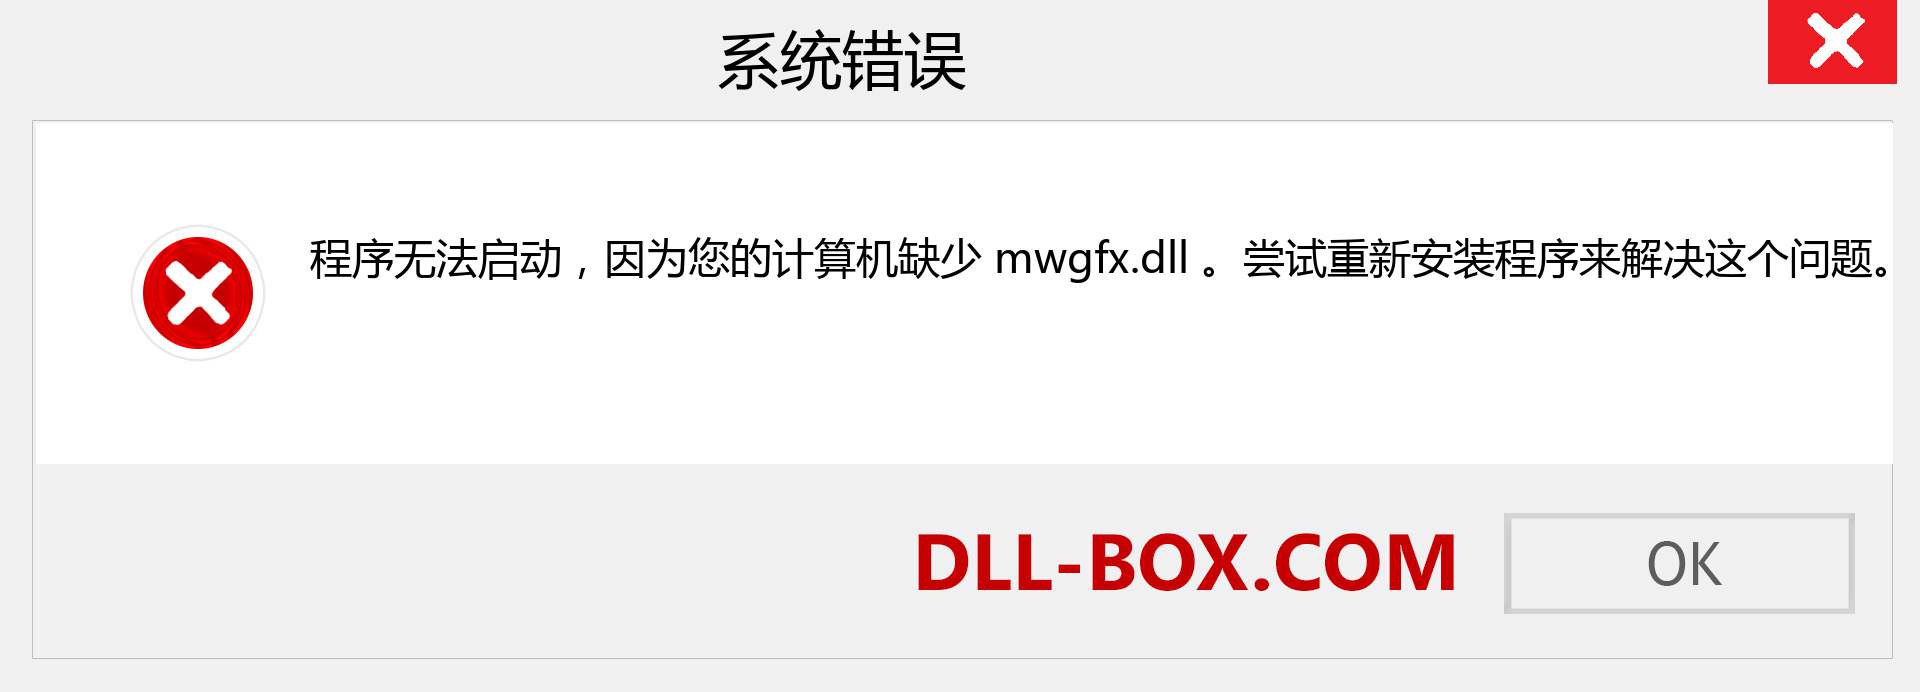 mwgfx.dll 文件丢失？。 适用于 Windows 7、8、10 的下载 - 修复 Windows、照片、图像上的 mwgfx dll 丢失错误